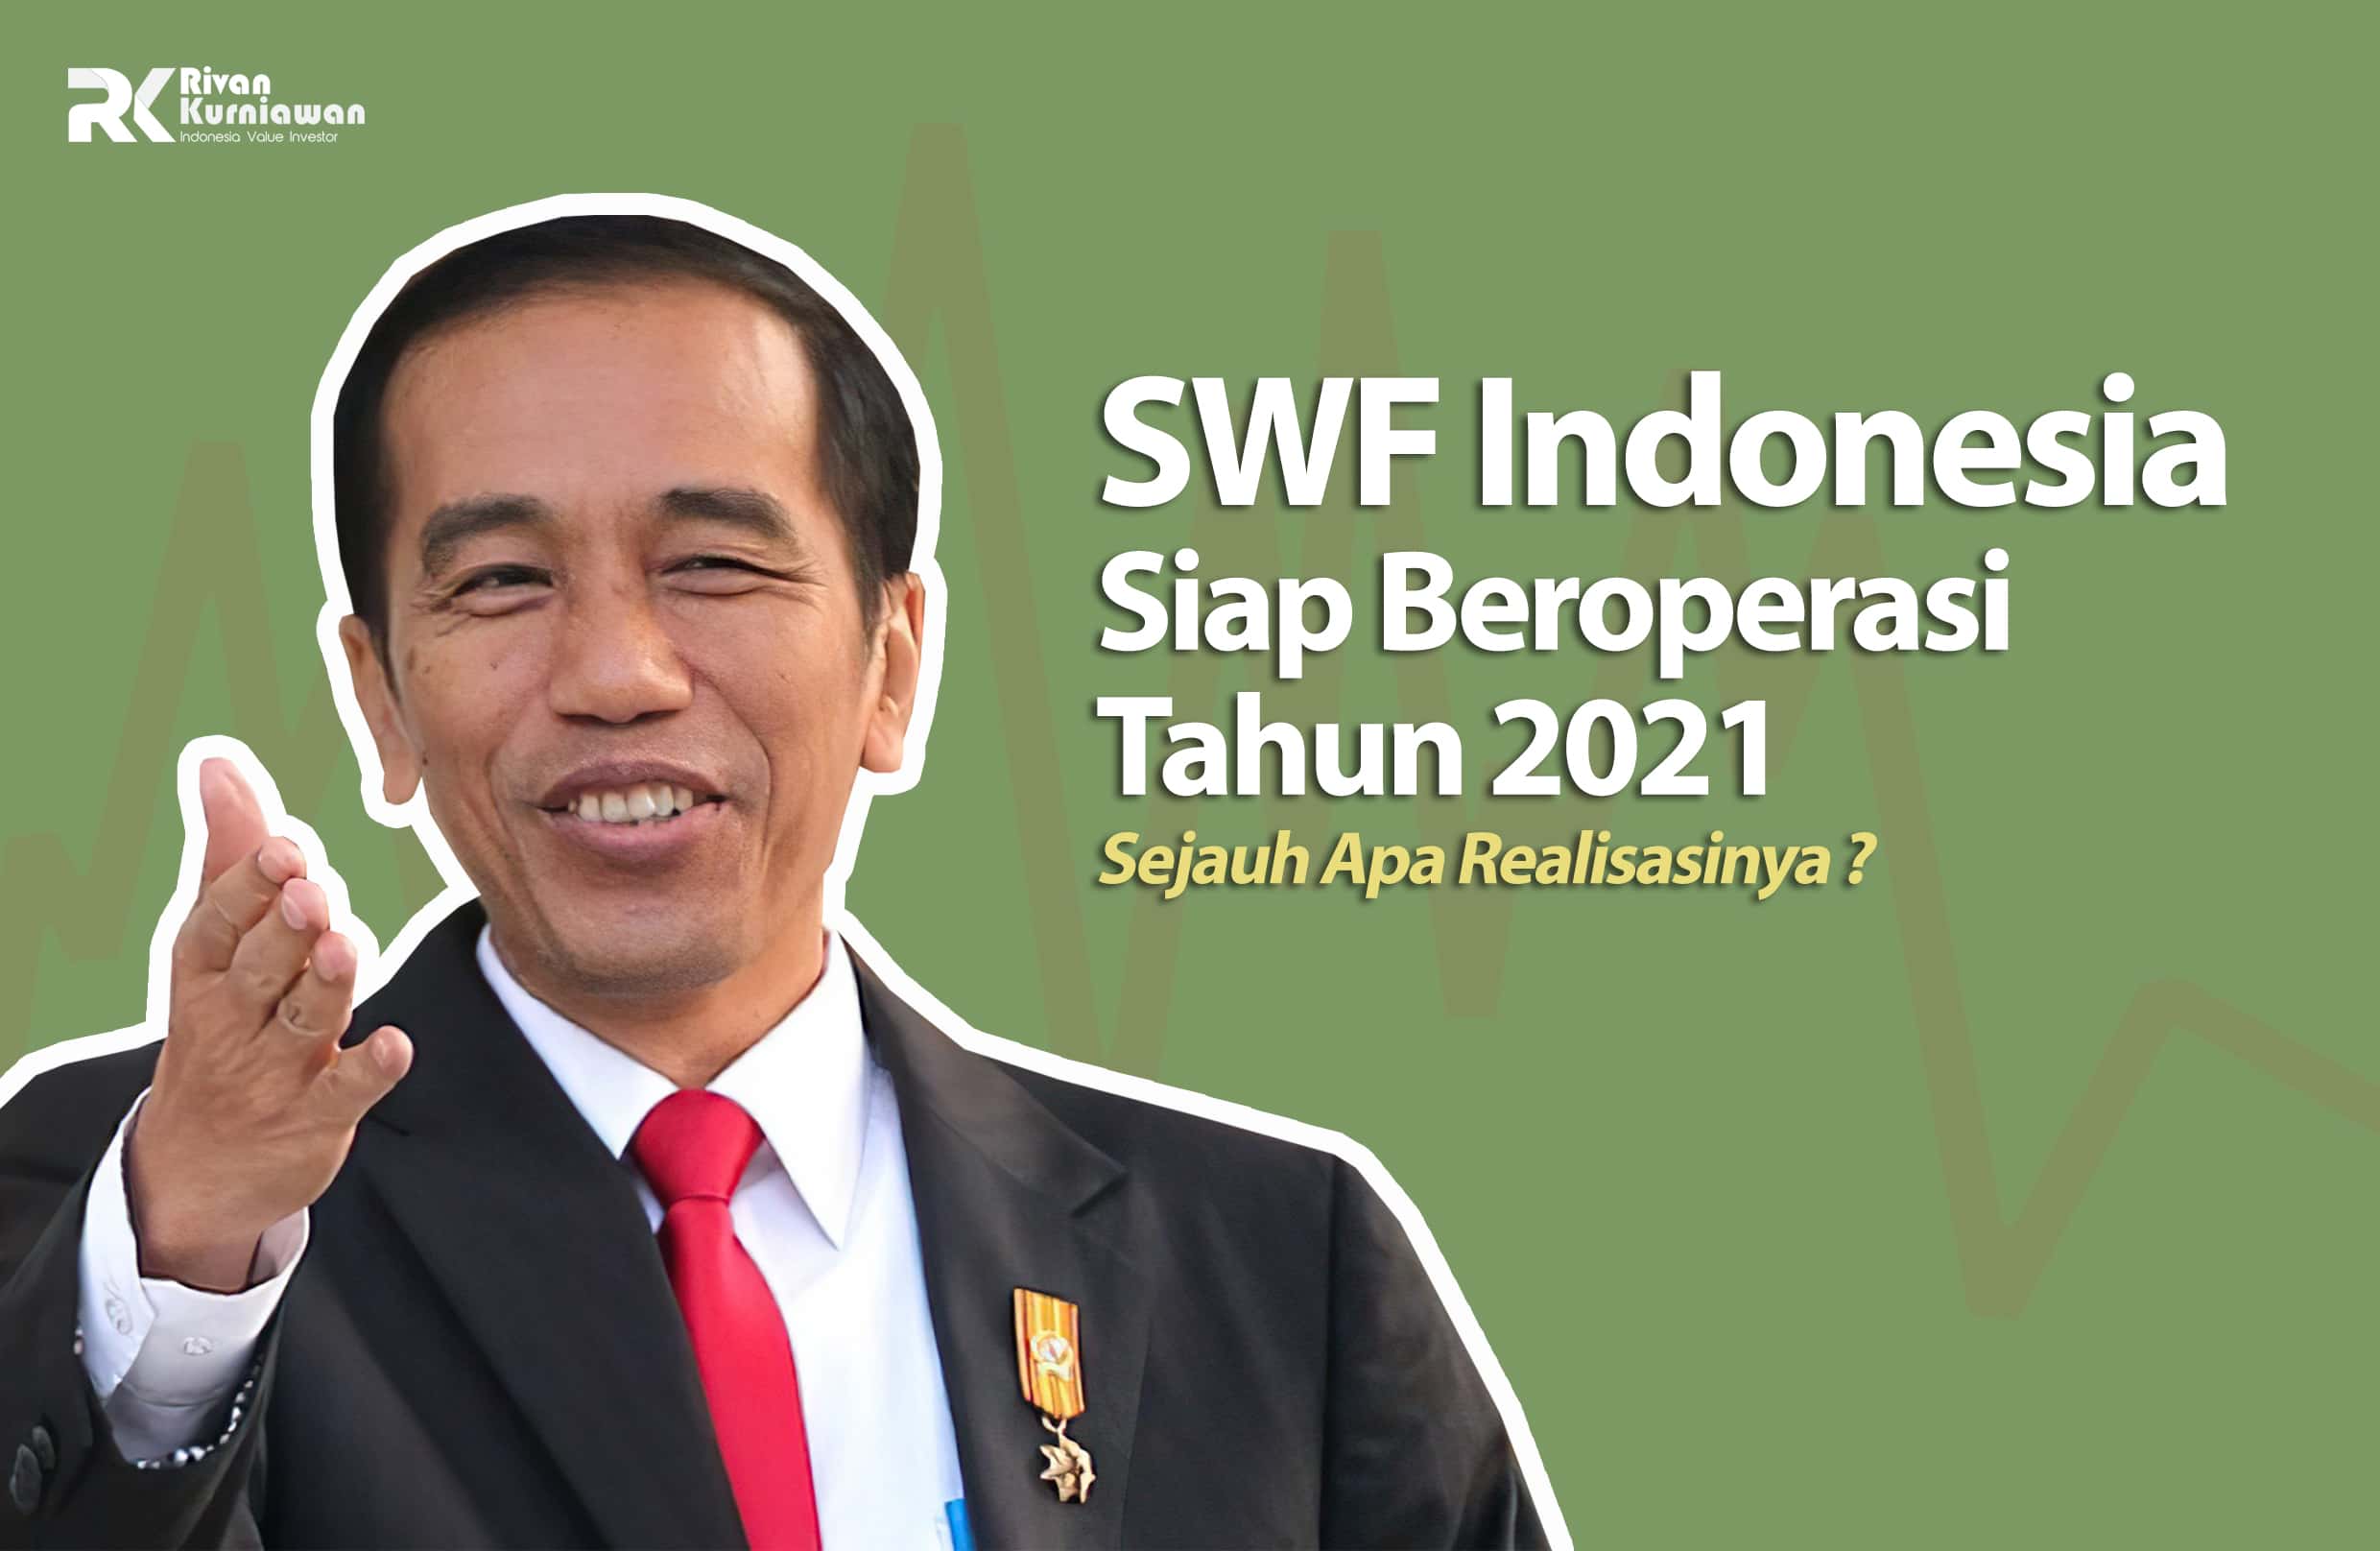 SWF Indonesia Siap Beroperasi